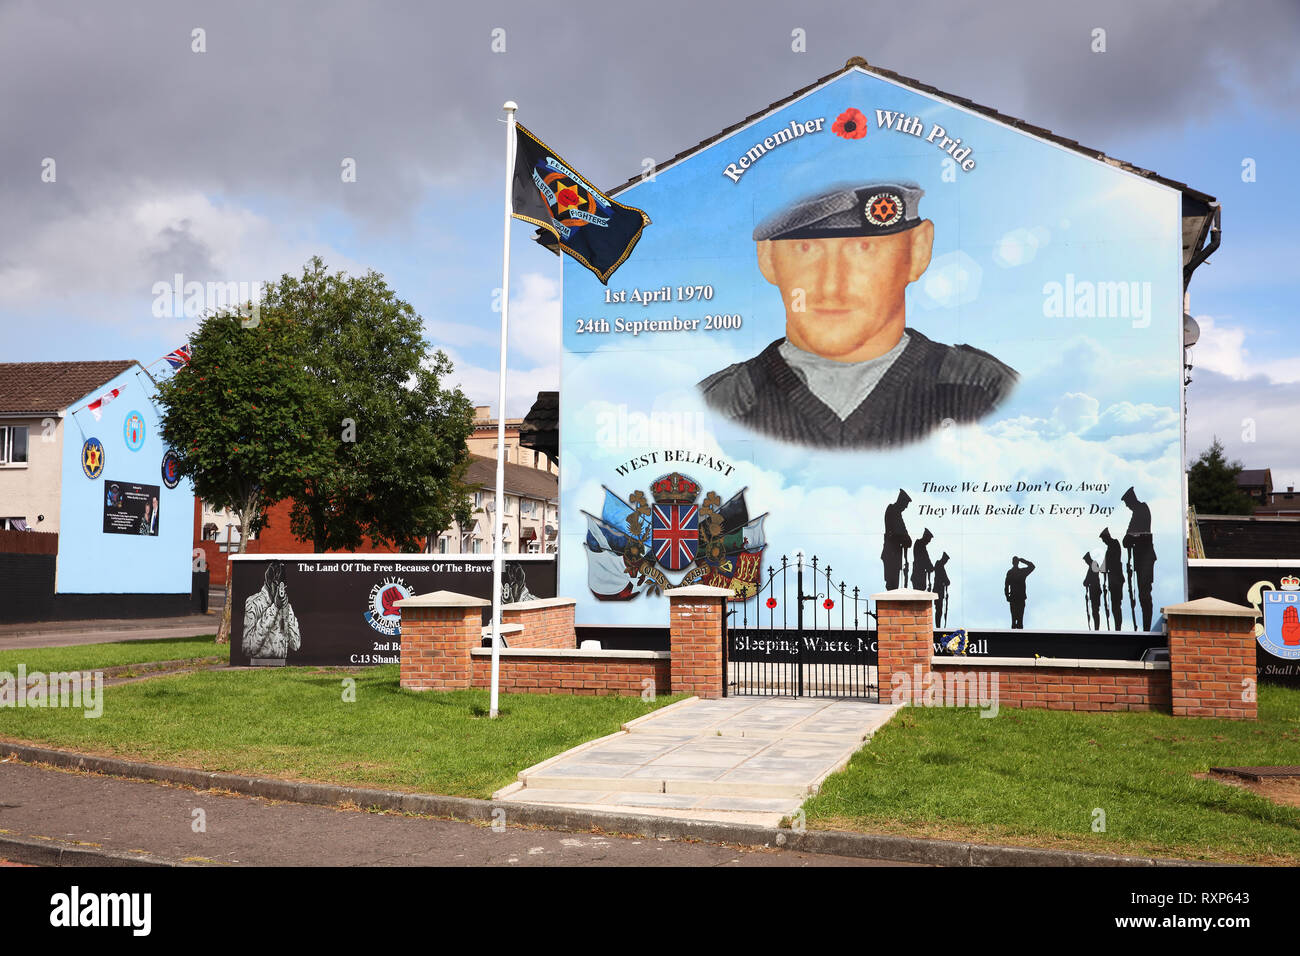 Mural político en conmemoración de la Asociación de Defensa del Ulster comandante Stephen McKeag quién fue responsable de muchos de los asesinatos brutales de los católicos y republicanos durante 'Los Problemas', Hopewell Crescent, Belfast, Irlanda del Norte Foto de stock